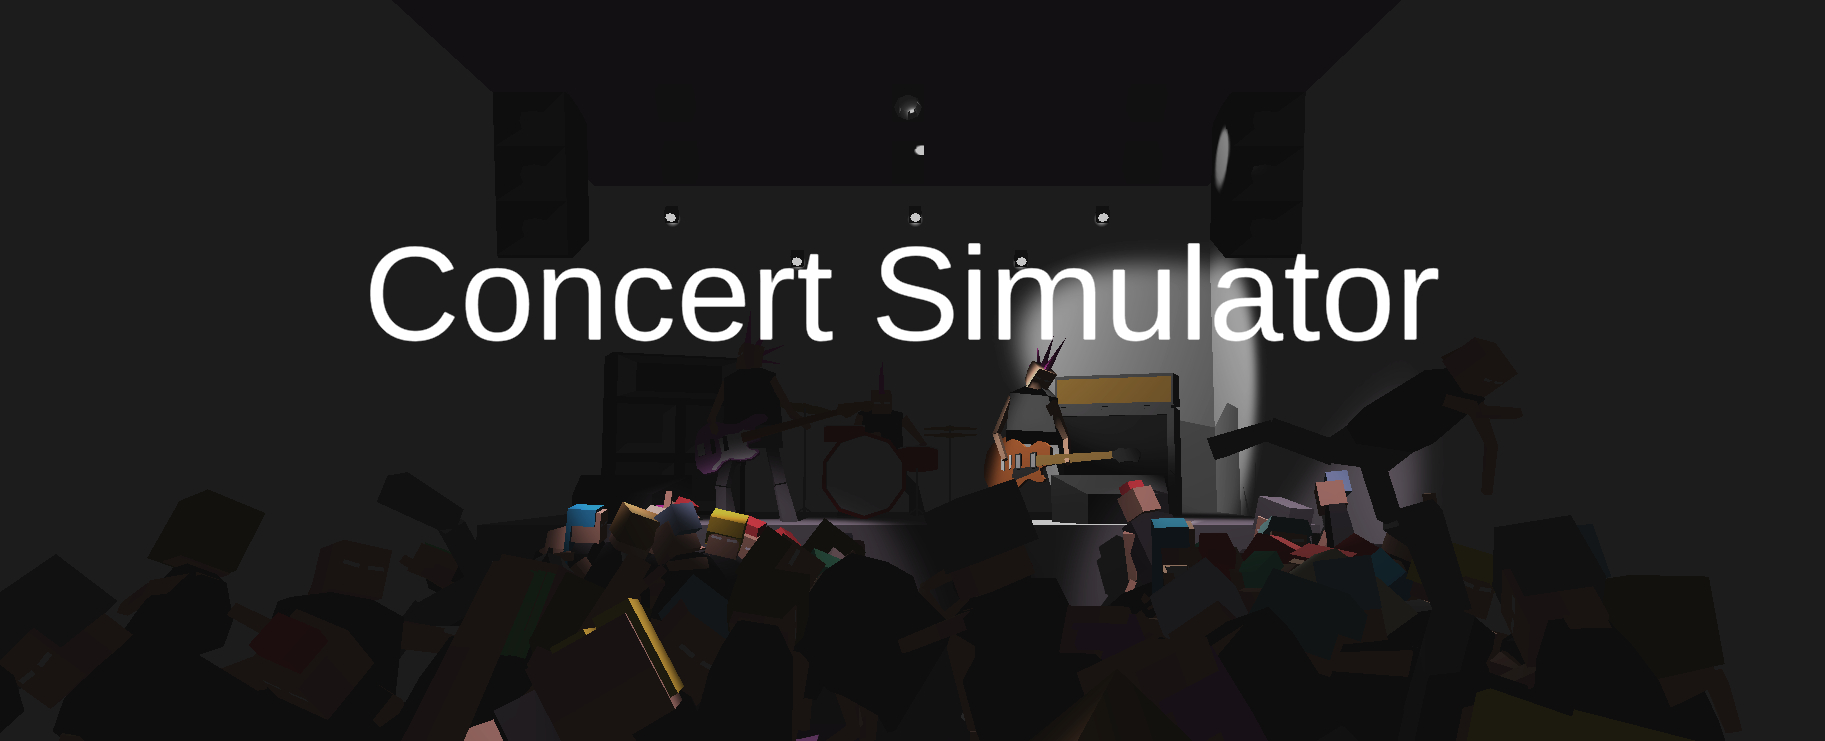 Concert Simulator